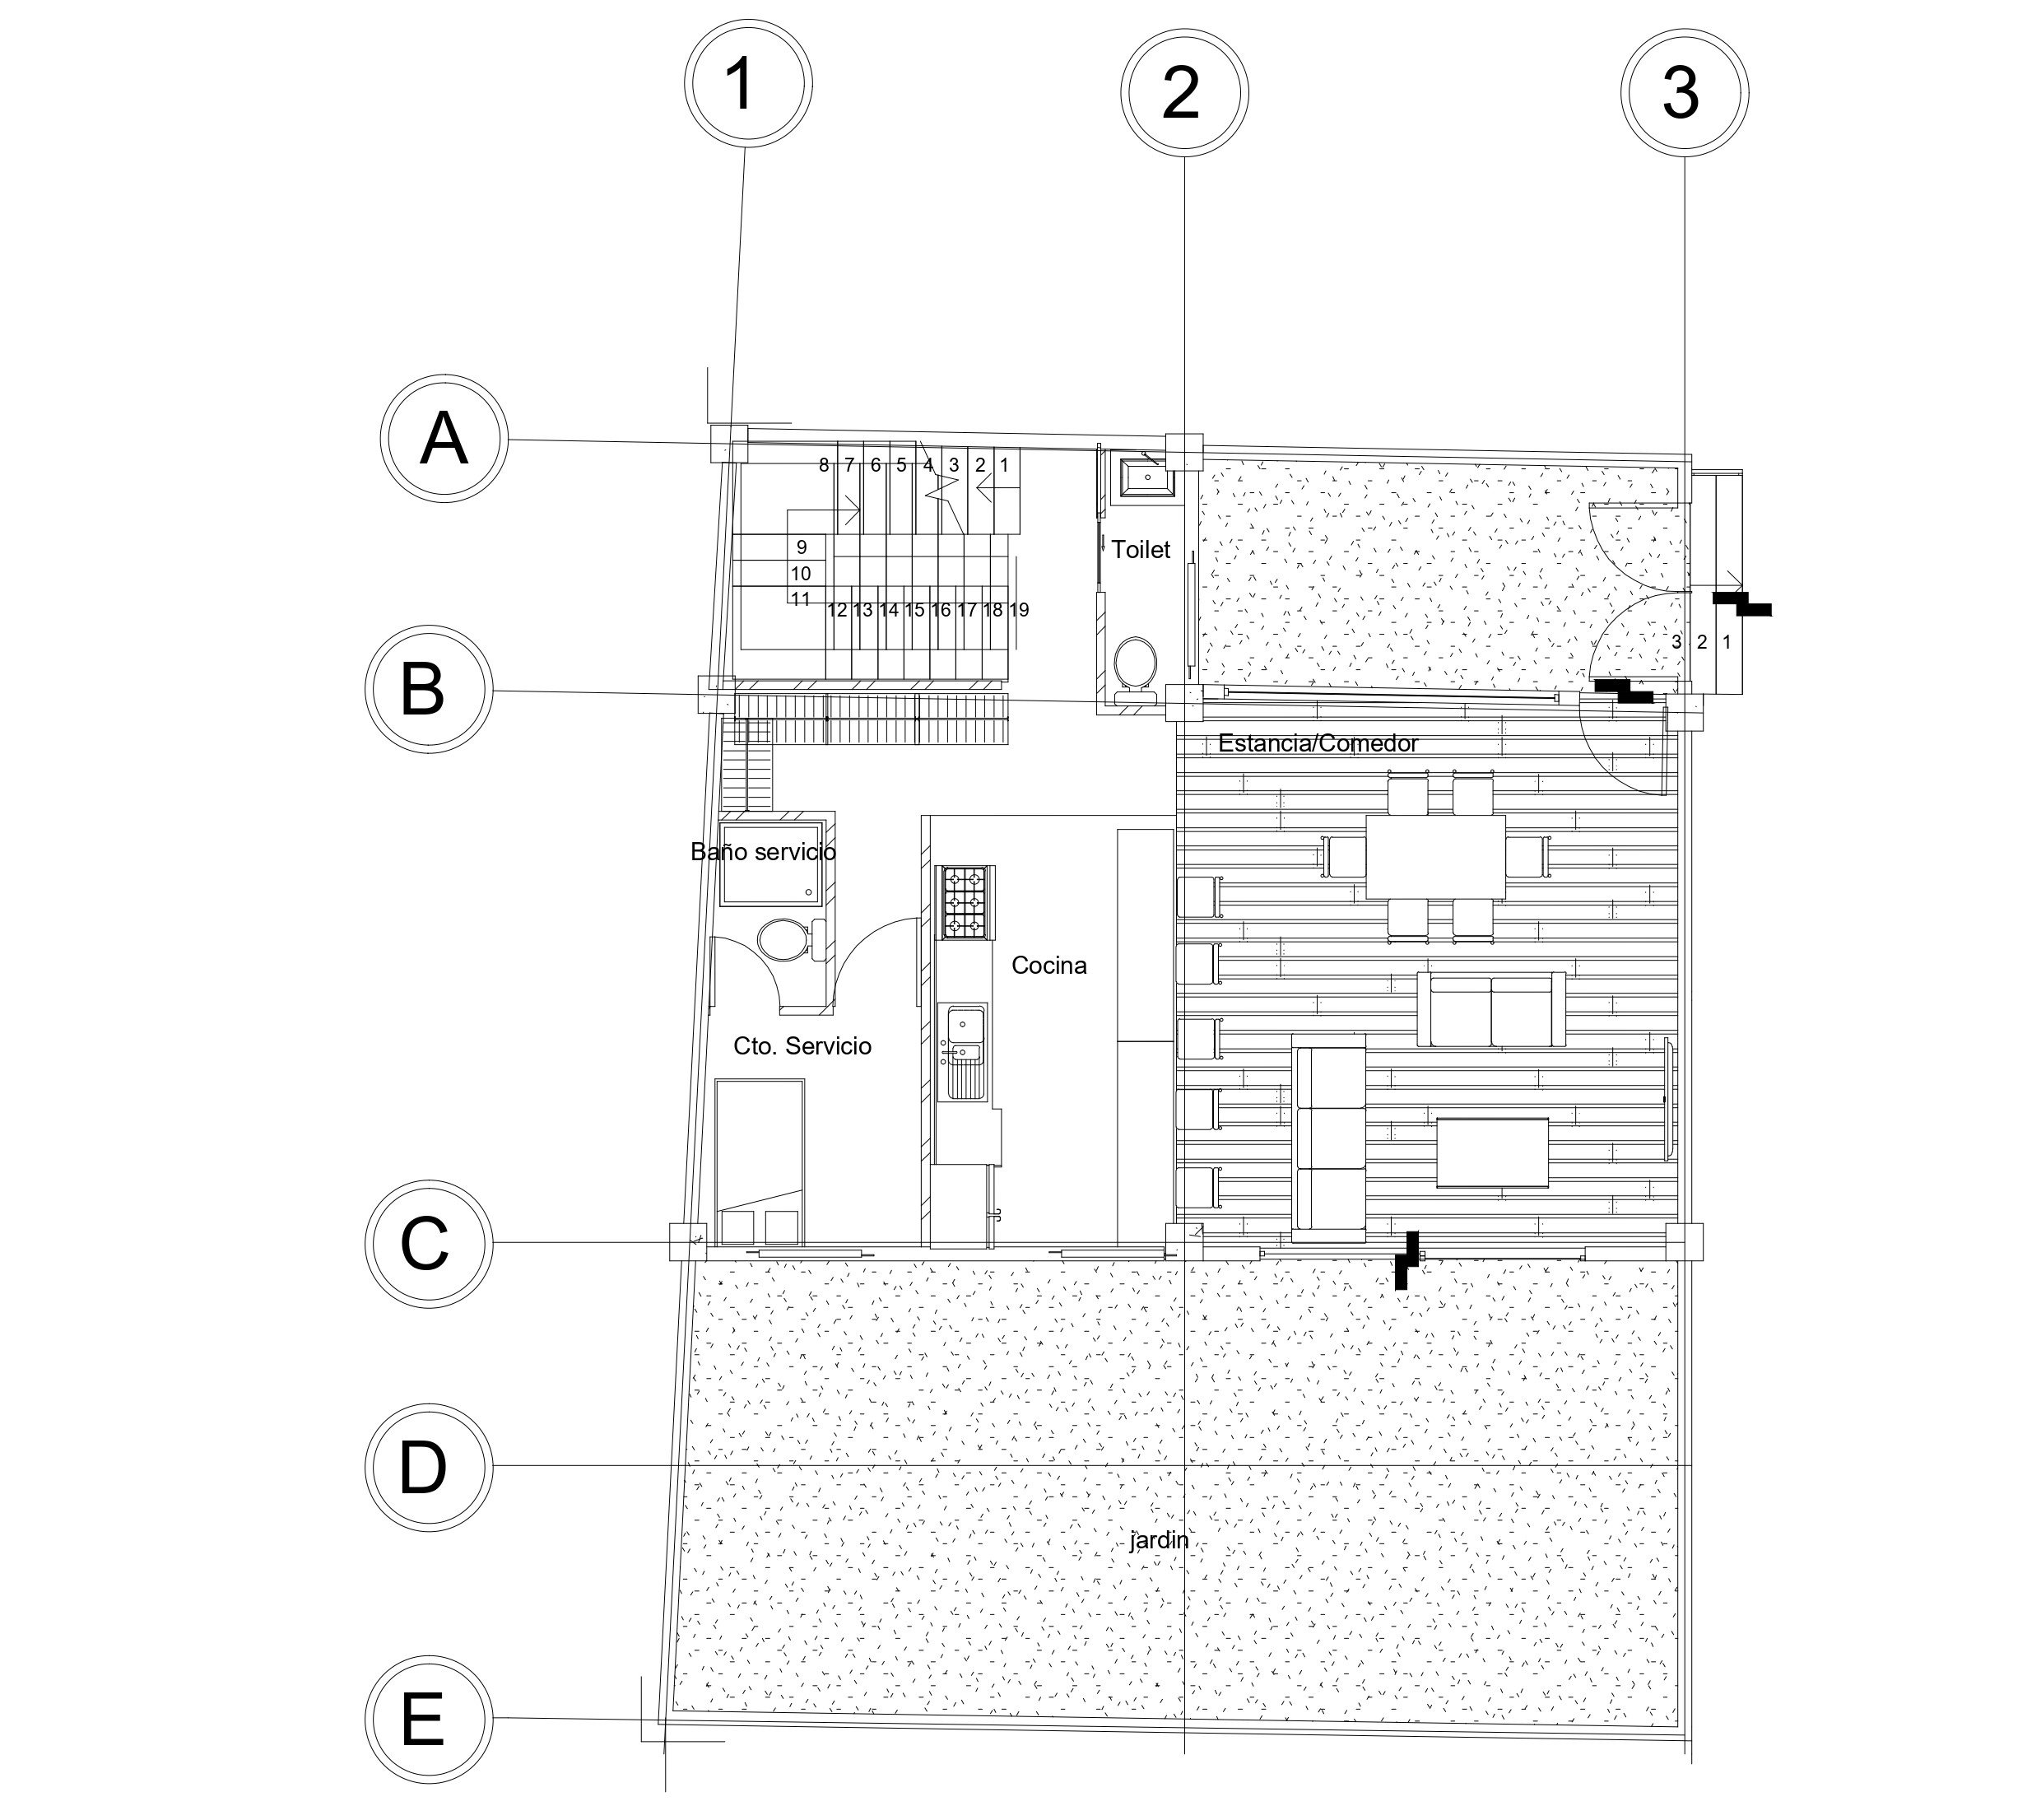 adf 6 casas 1103 m2-Plano - ARQ-02 - PB-N1-Model_page-0001 (1).jpg